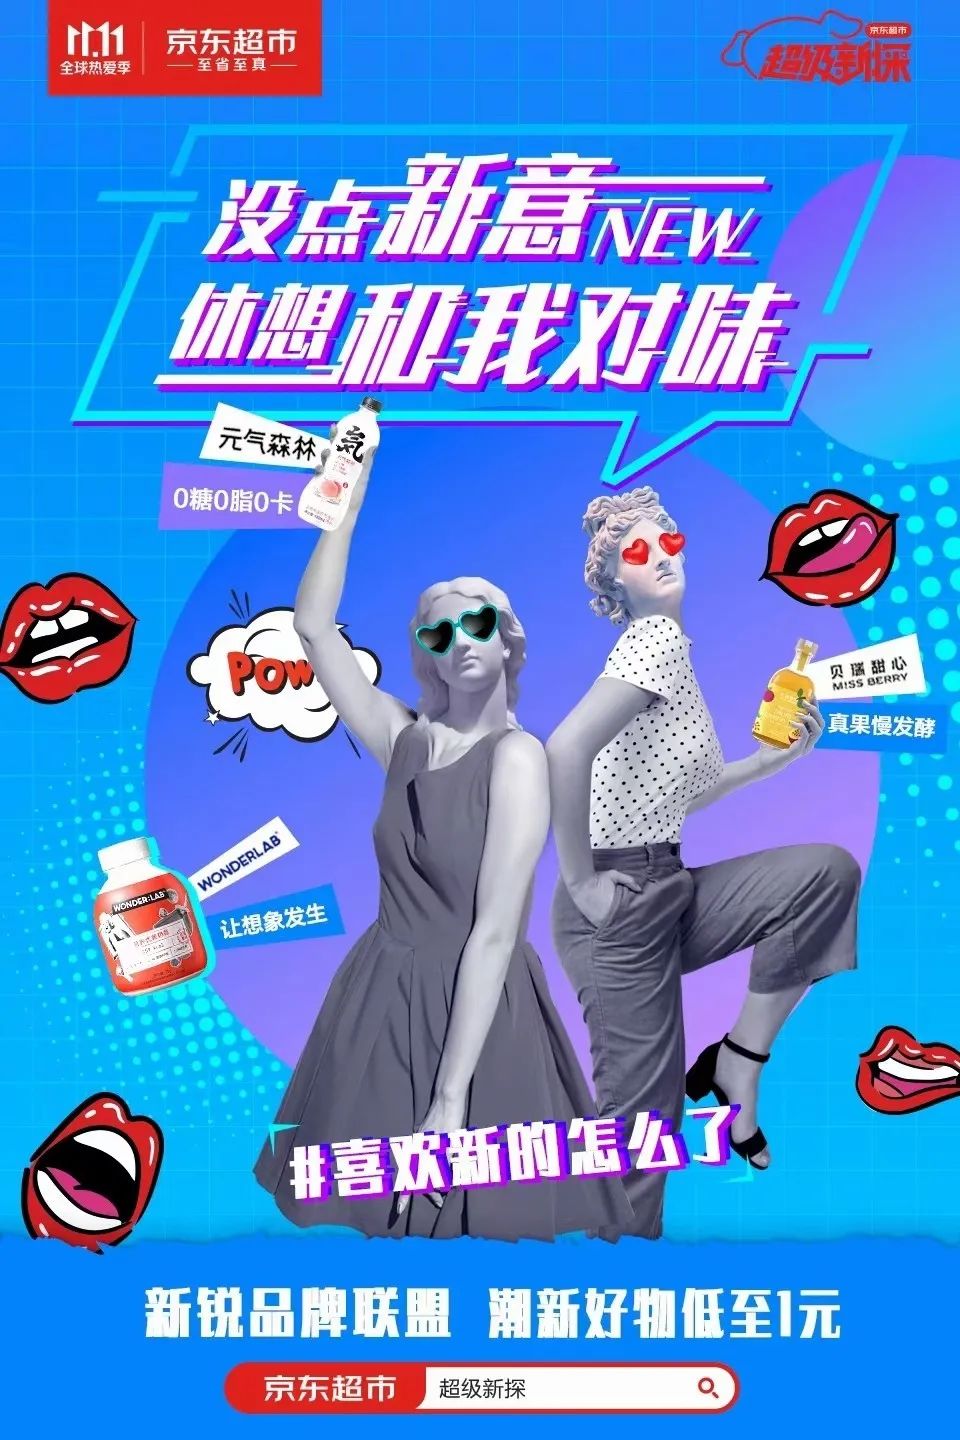 京东双十一超级新探品牌策划营销宣传海报